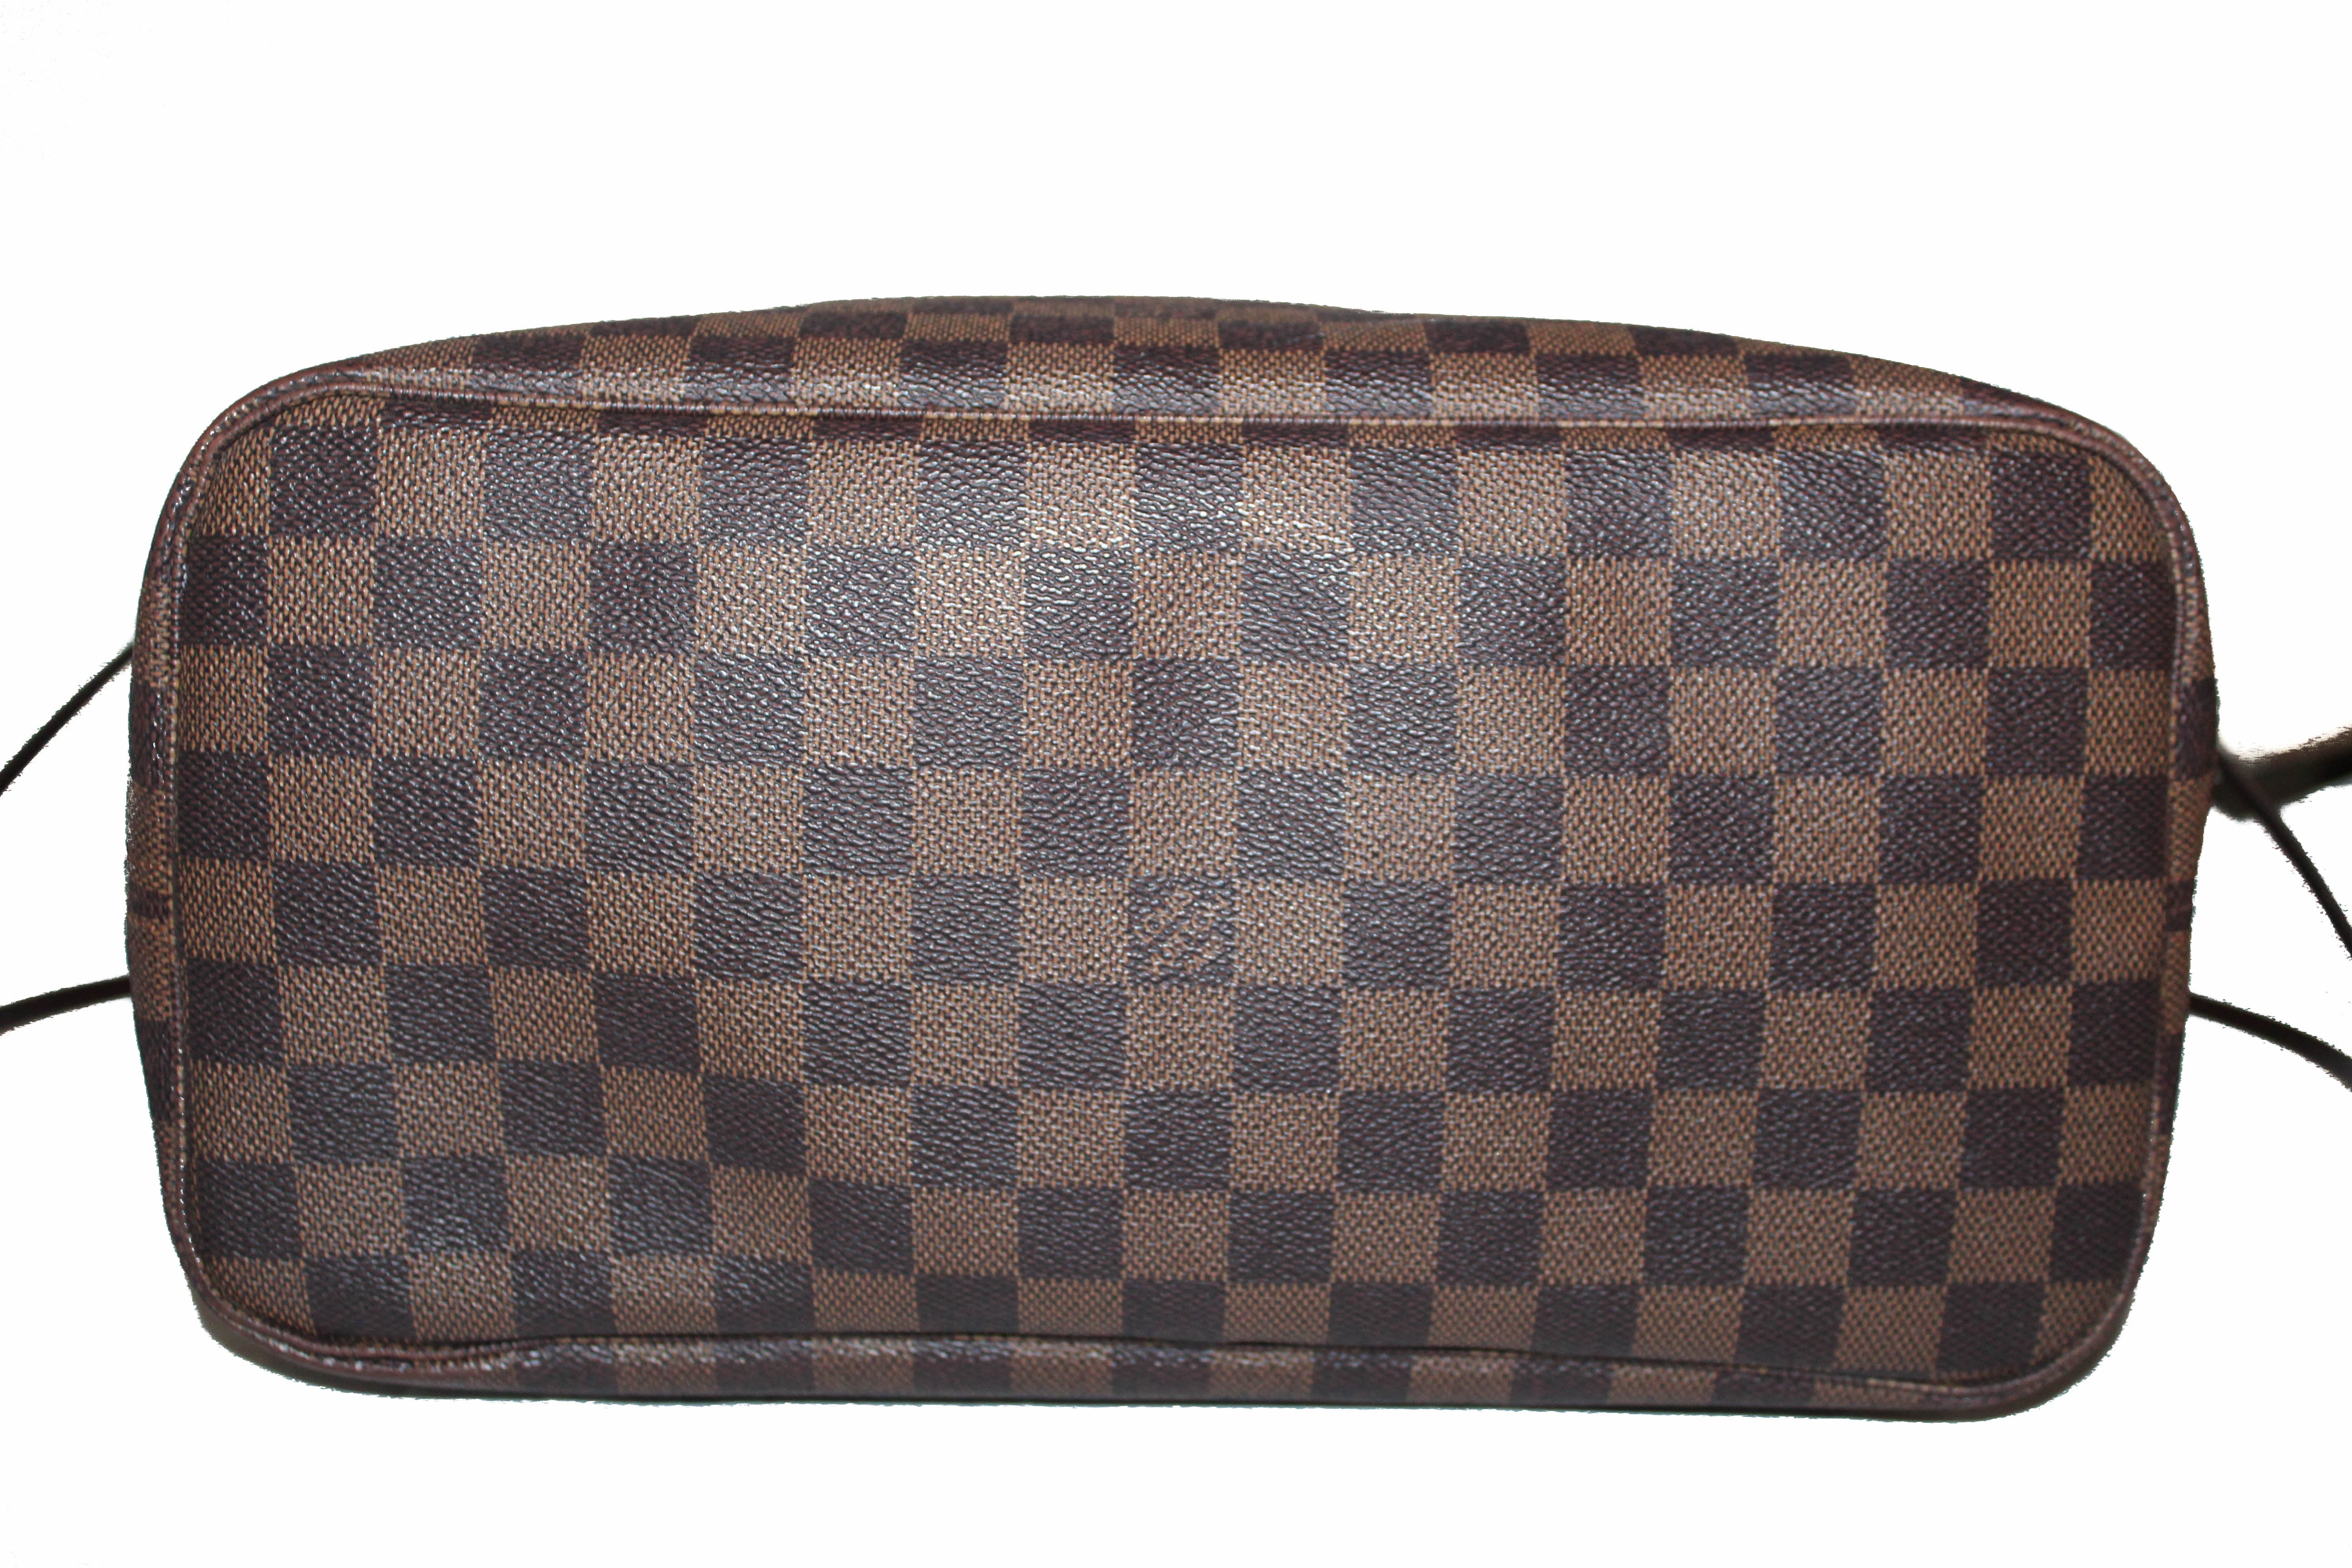 Authentic Louis Vuitton Damier Canvas Neverfull MM Shoulder Tote Bag